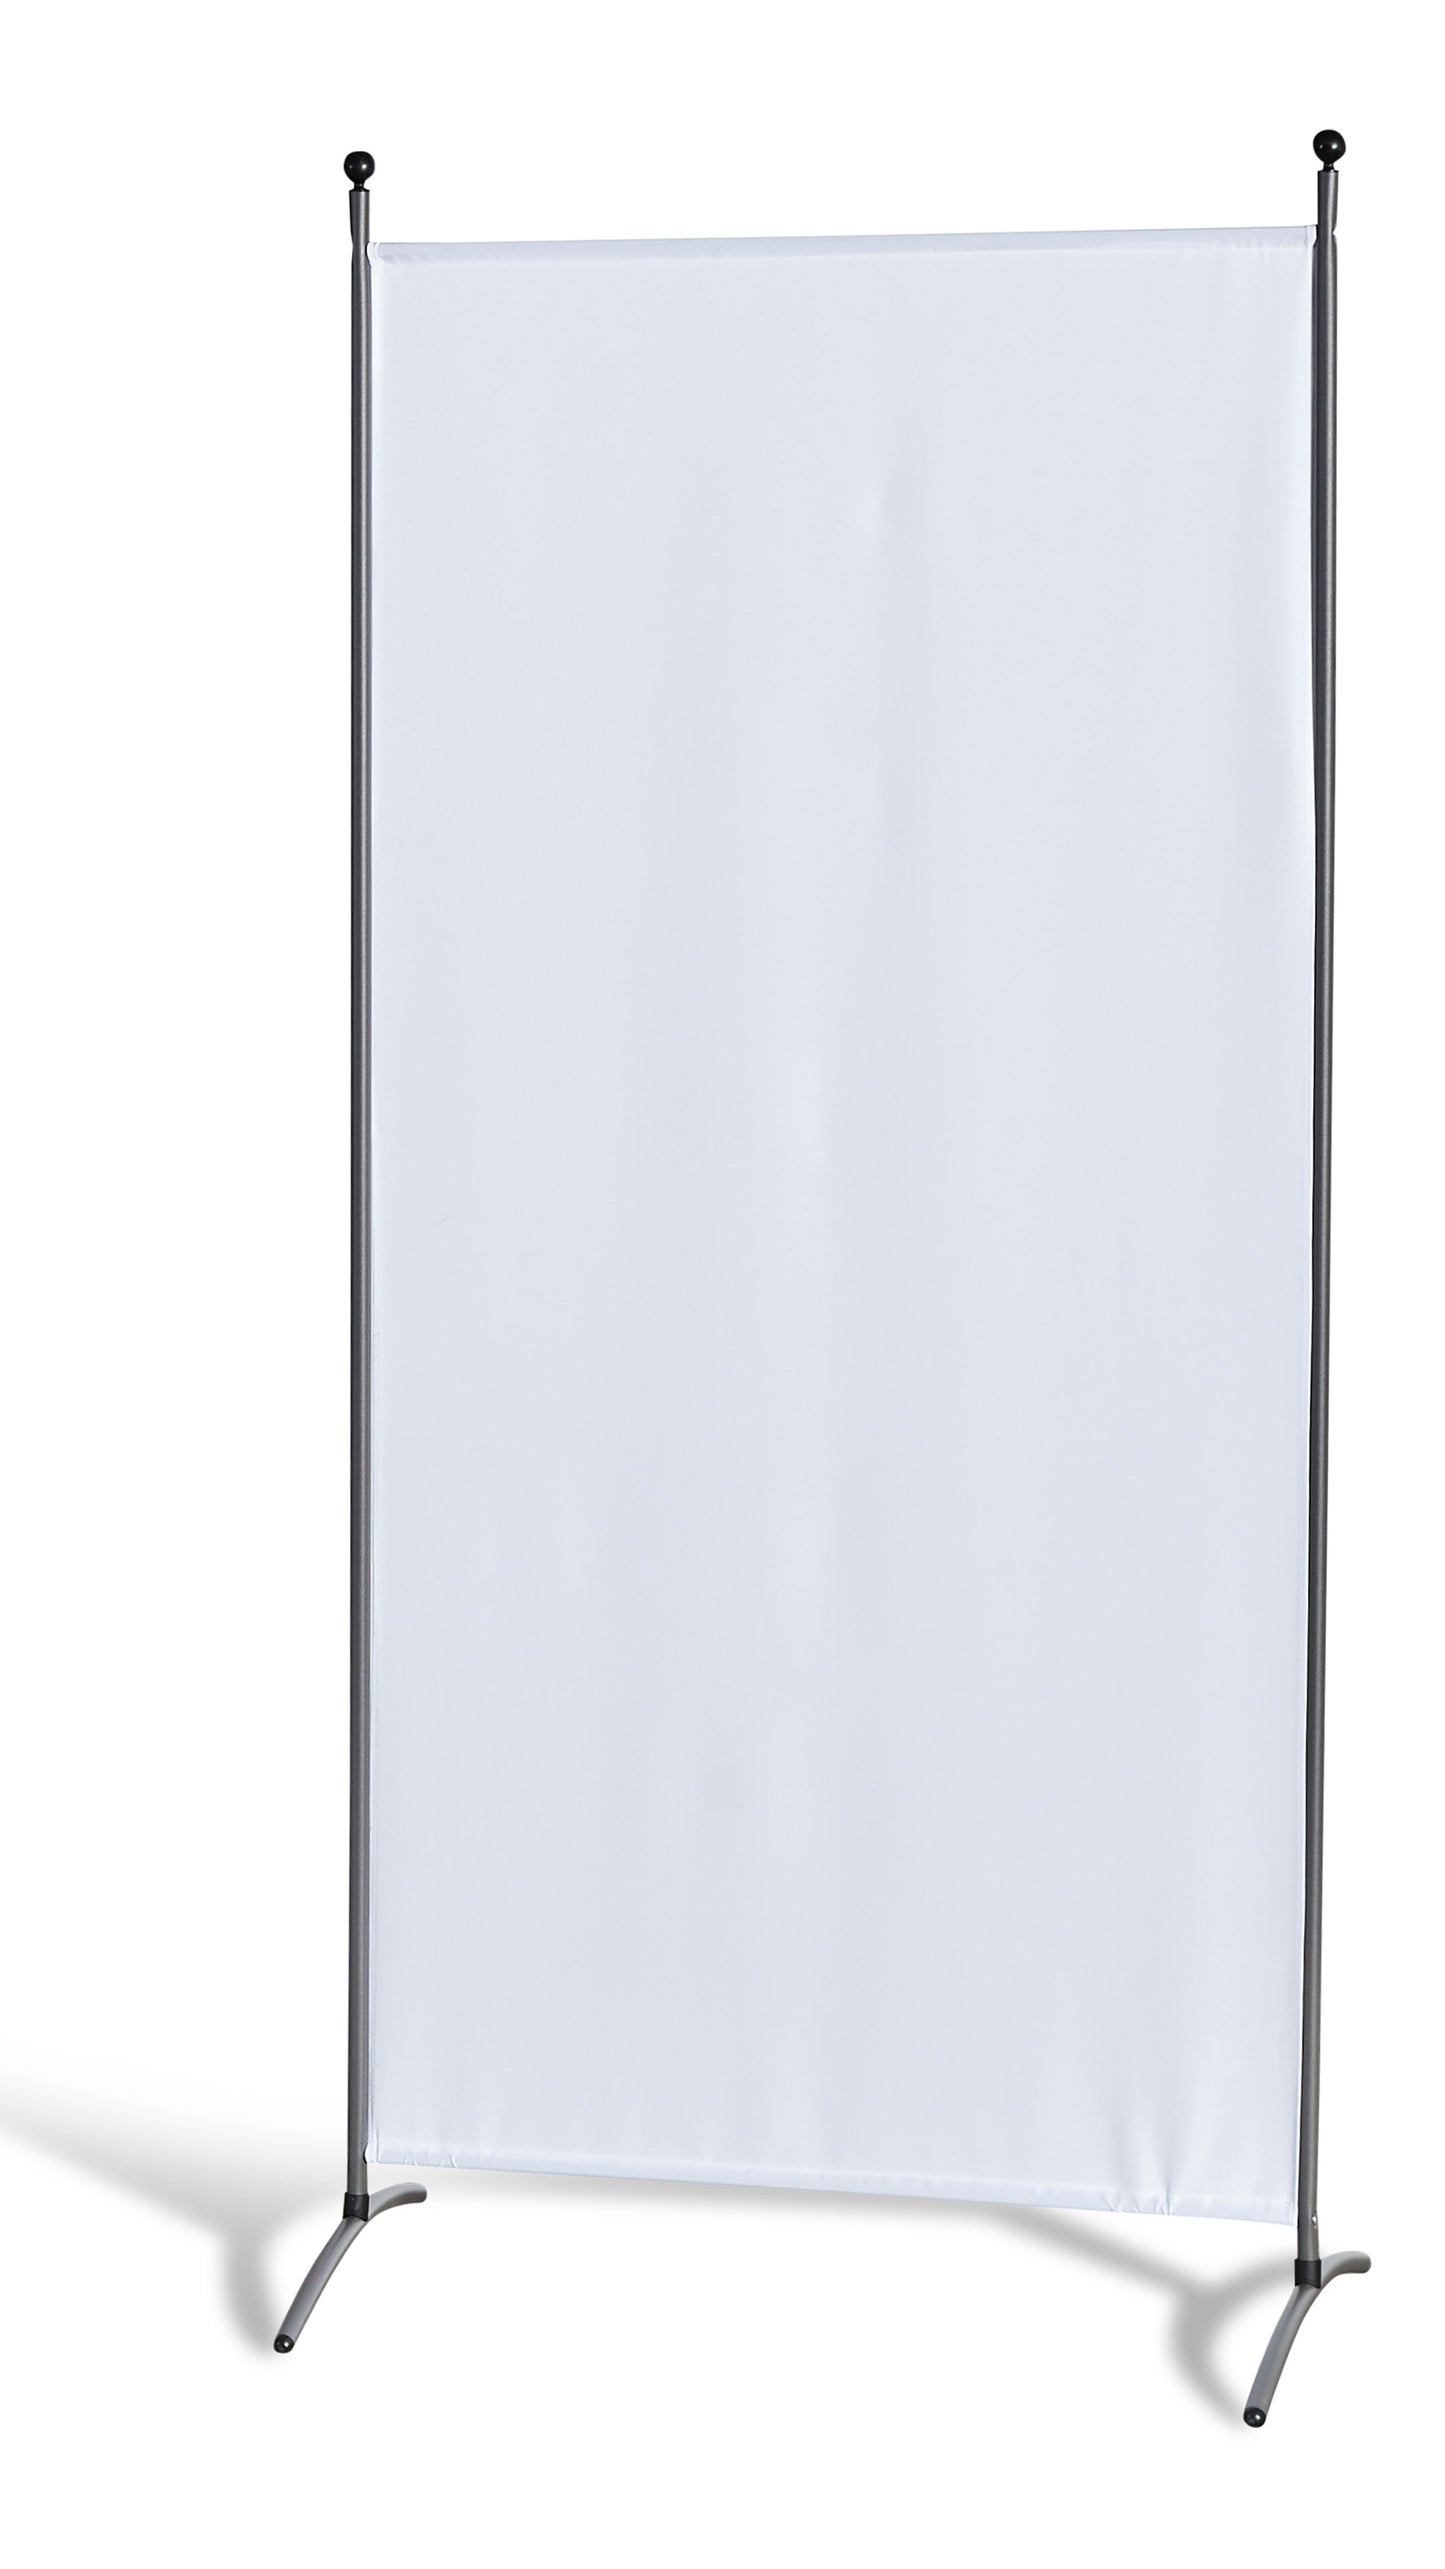 Stellwand 85 x 180 cm - Weiß - Paravent  Raumteiler Trennwand Sichtschutz